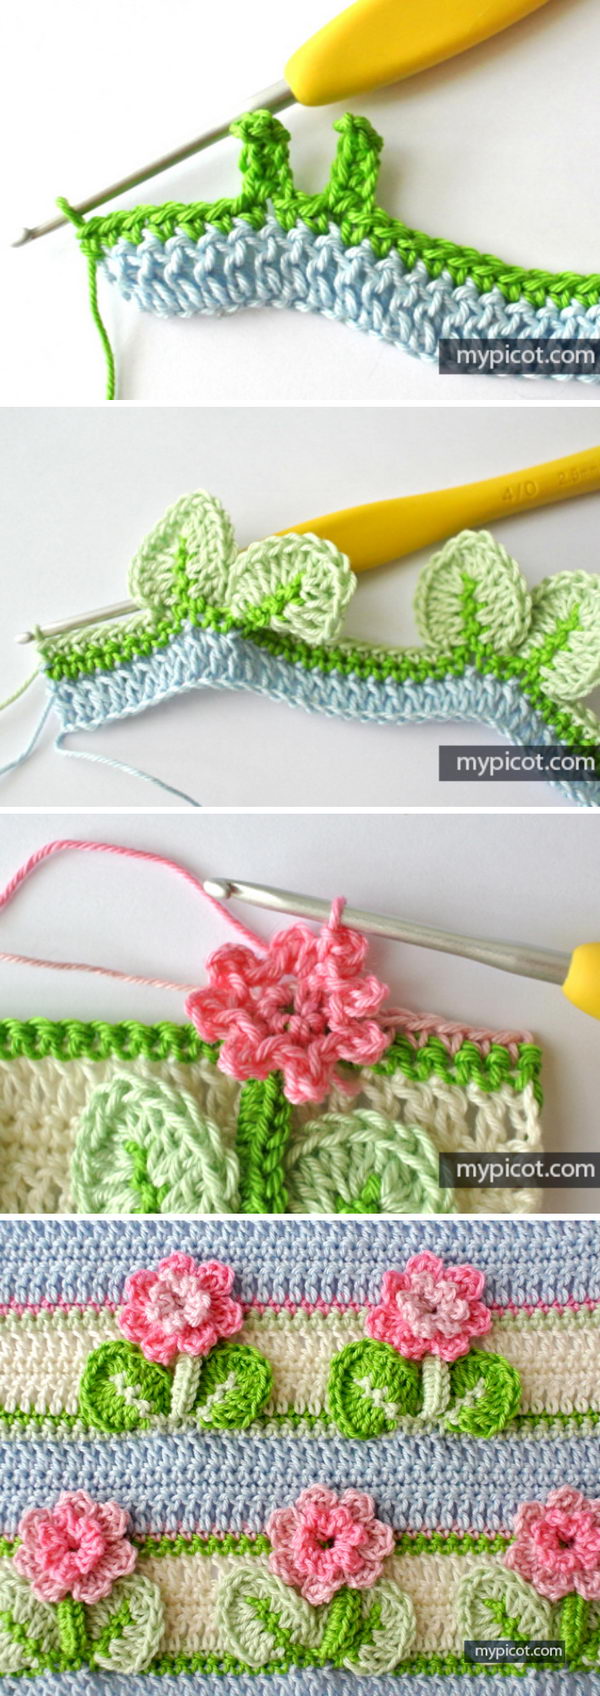 crochet flower stitch patterns 8